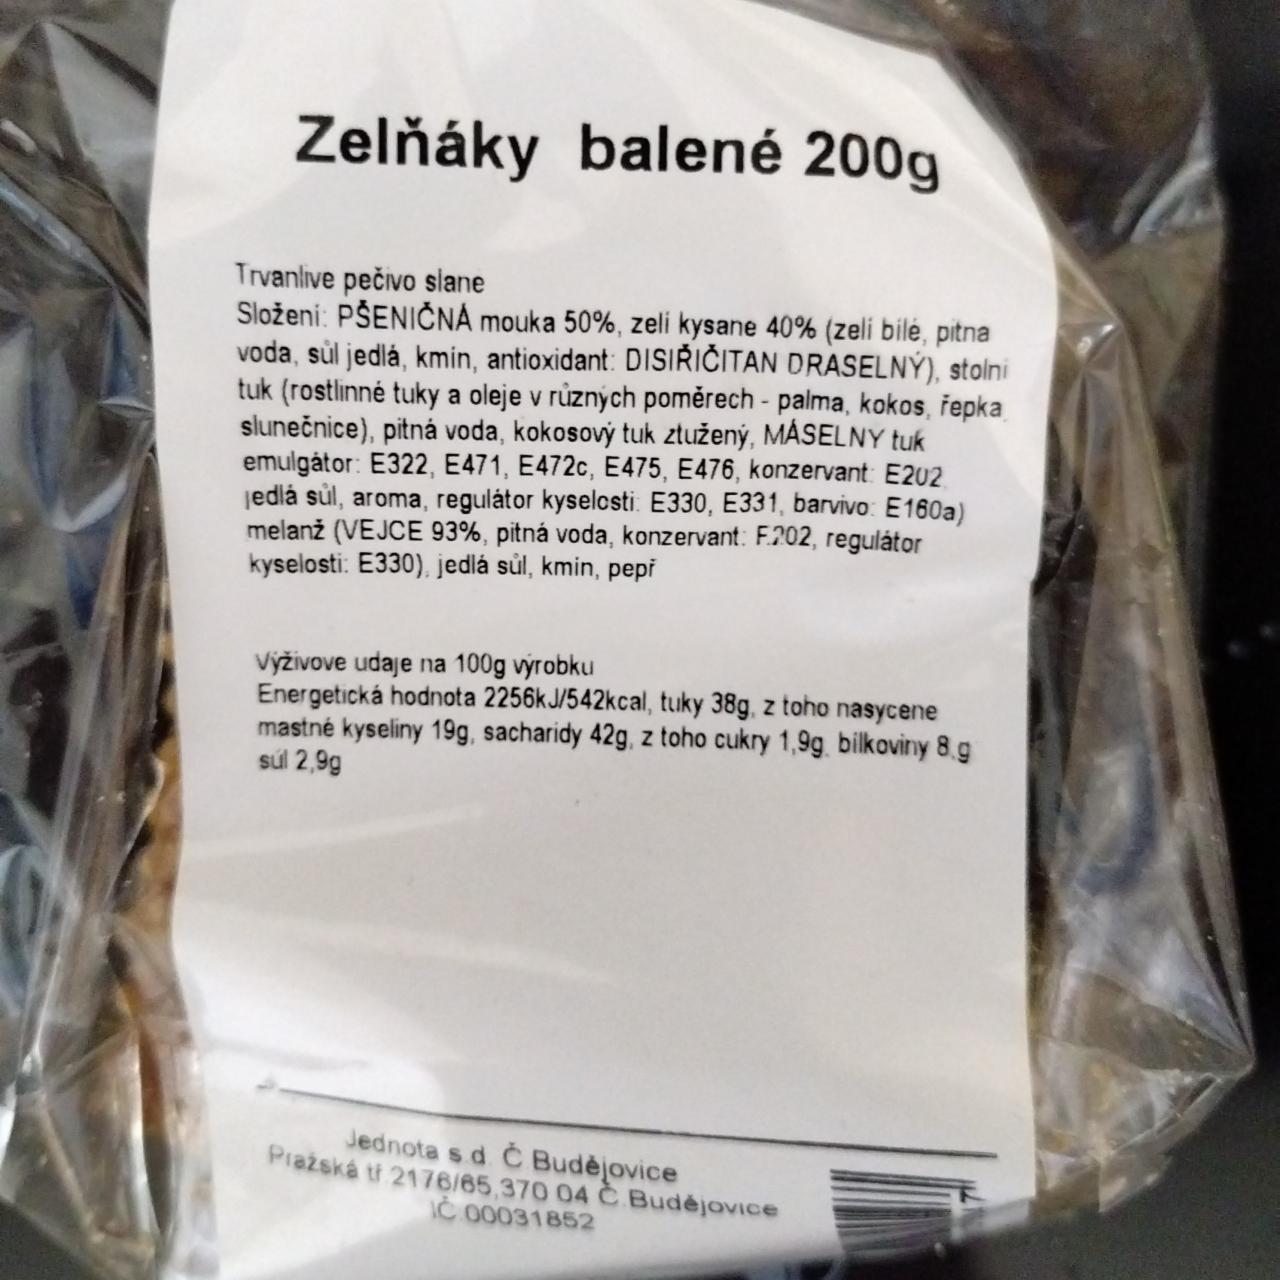 Fotografie - Zelňáky balené Jednota s.d. Č. Budějovice